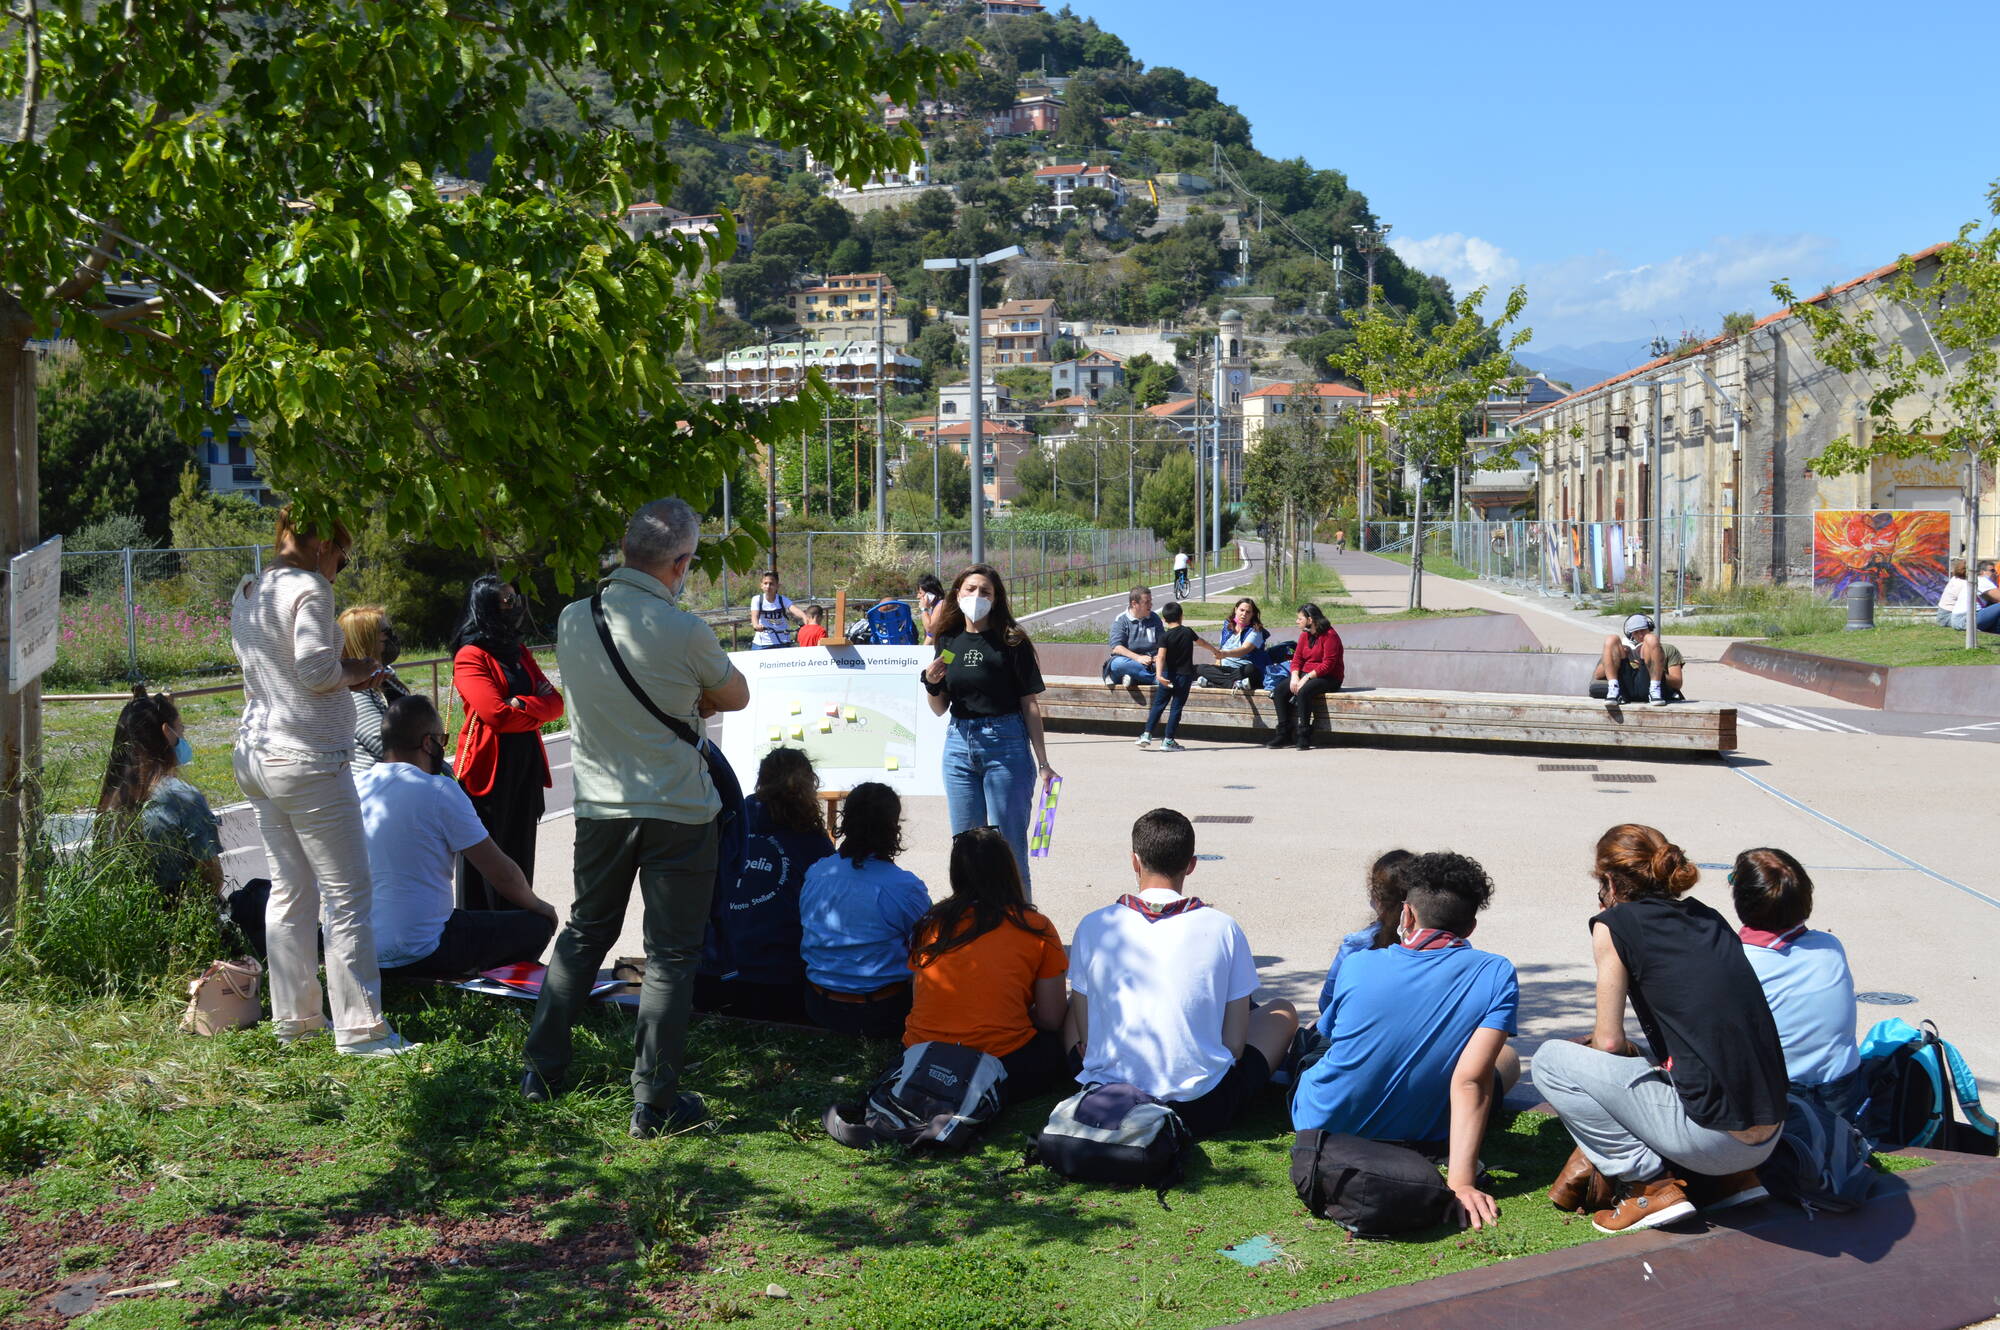 Partecipanti del progetto di co-design "Lo Spazio Pubblico" sono seduti all'aperto per ascoltare una presentazione. Sullo sfondo della fotografia la zona di Ventimiglia oggetto del progetto